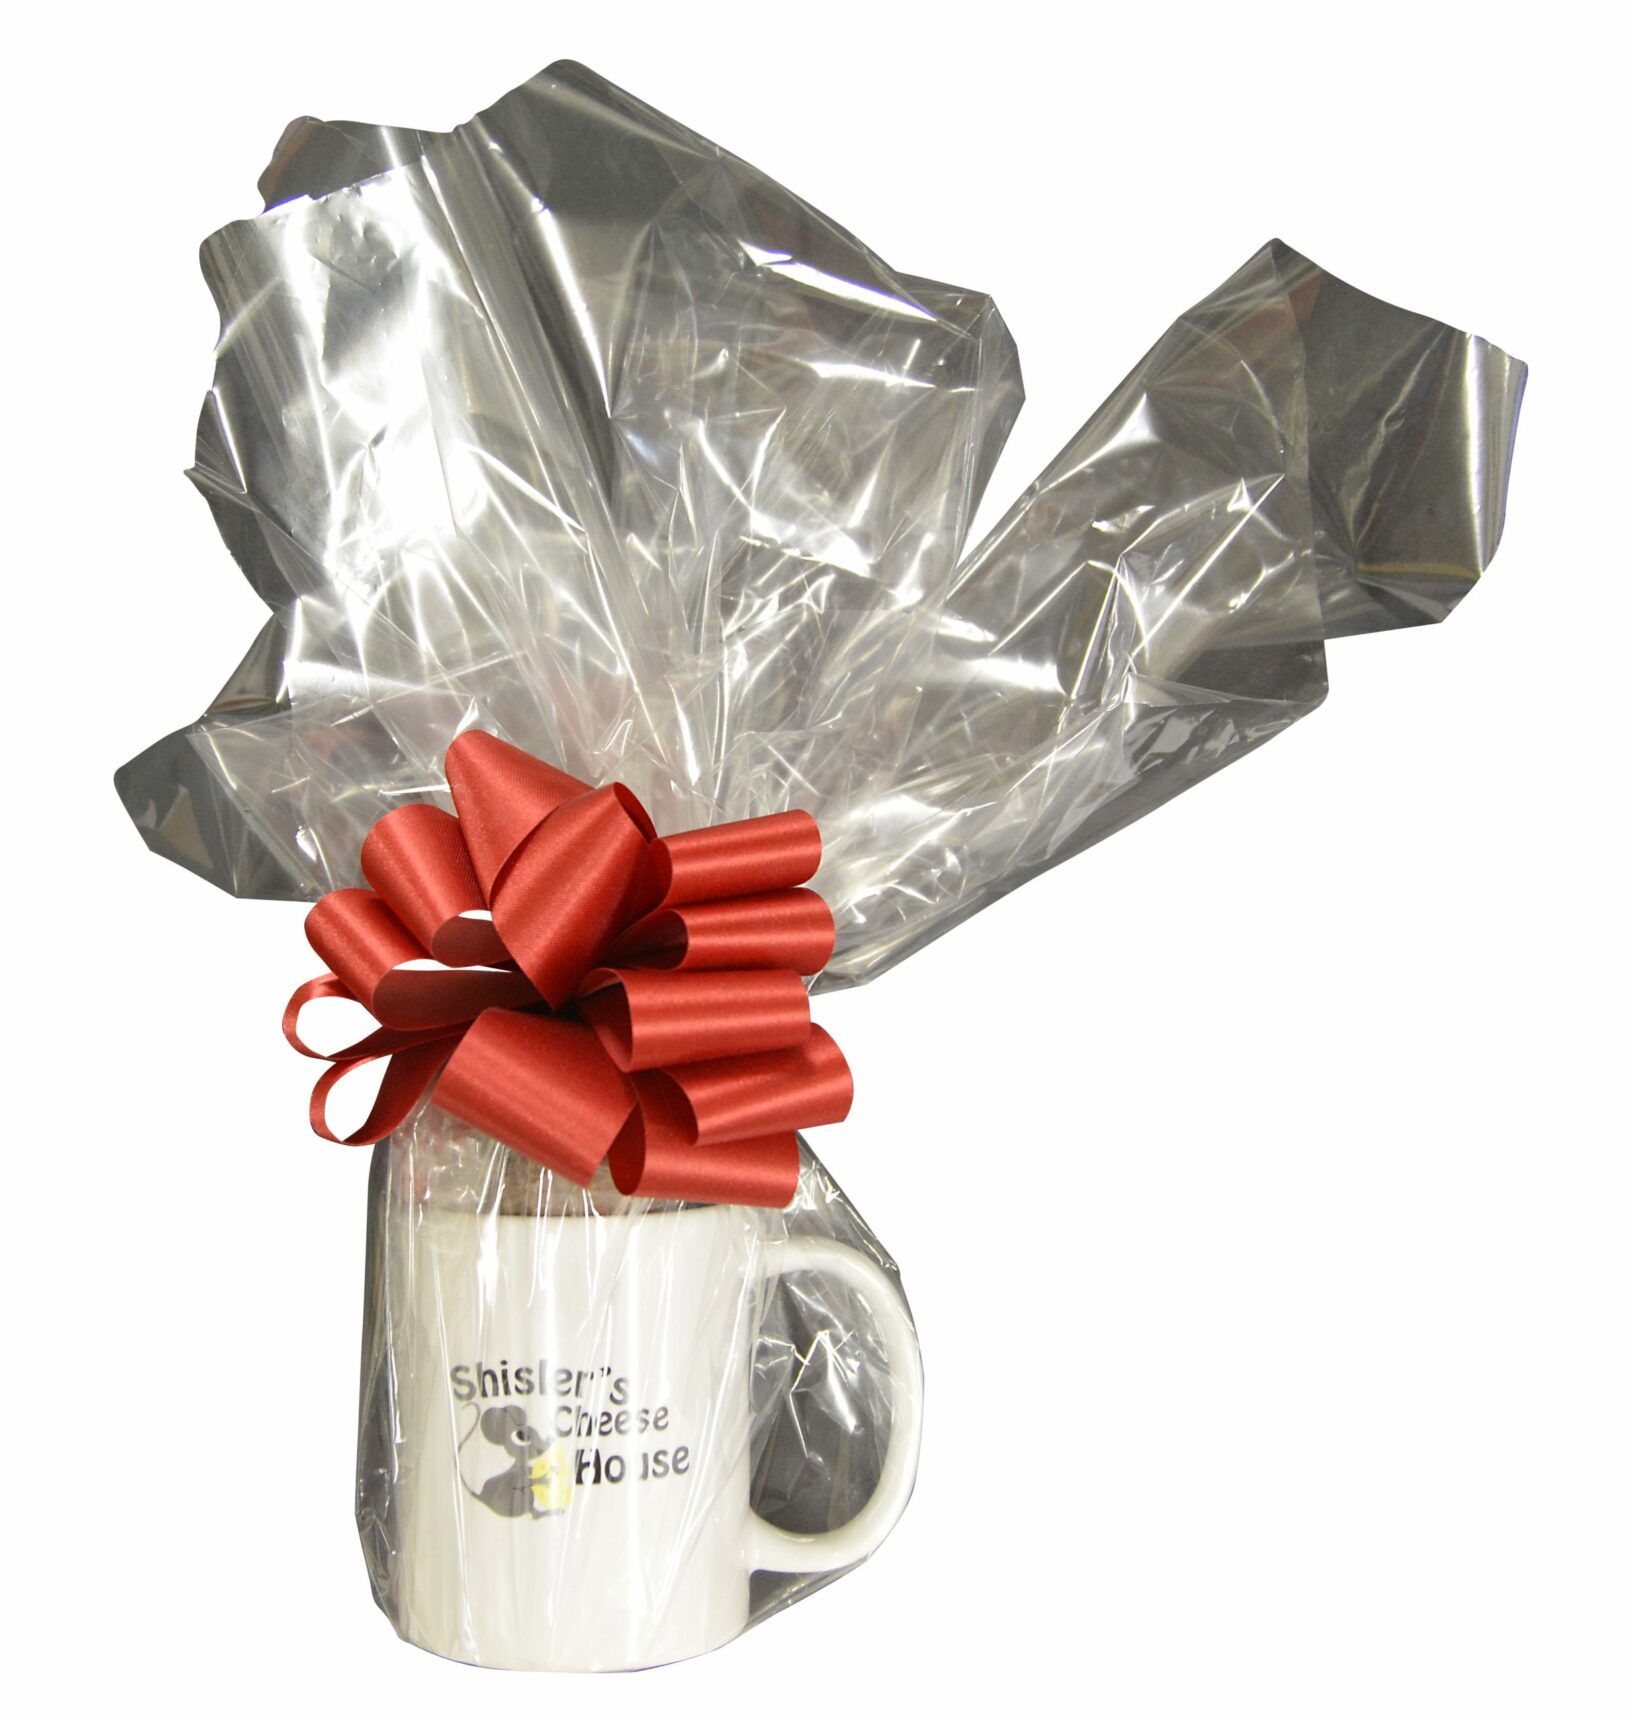 Shisler's Gift Mug